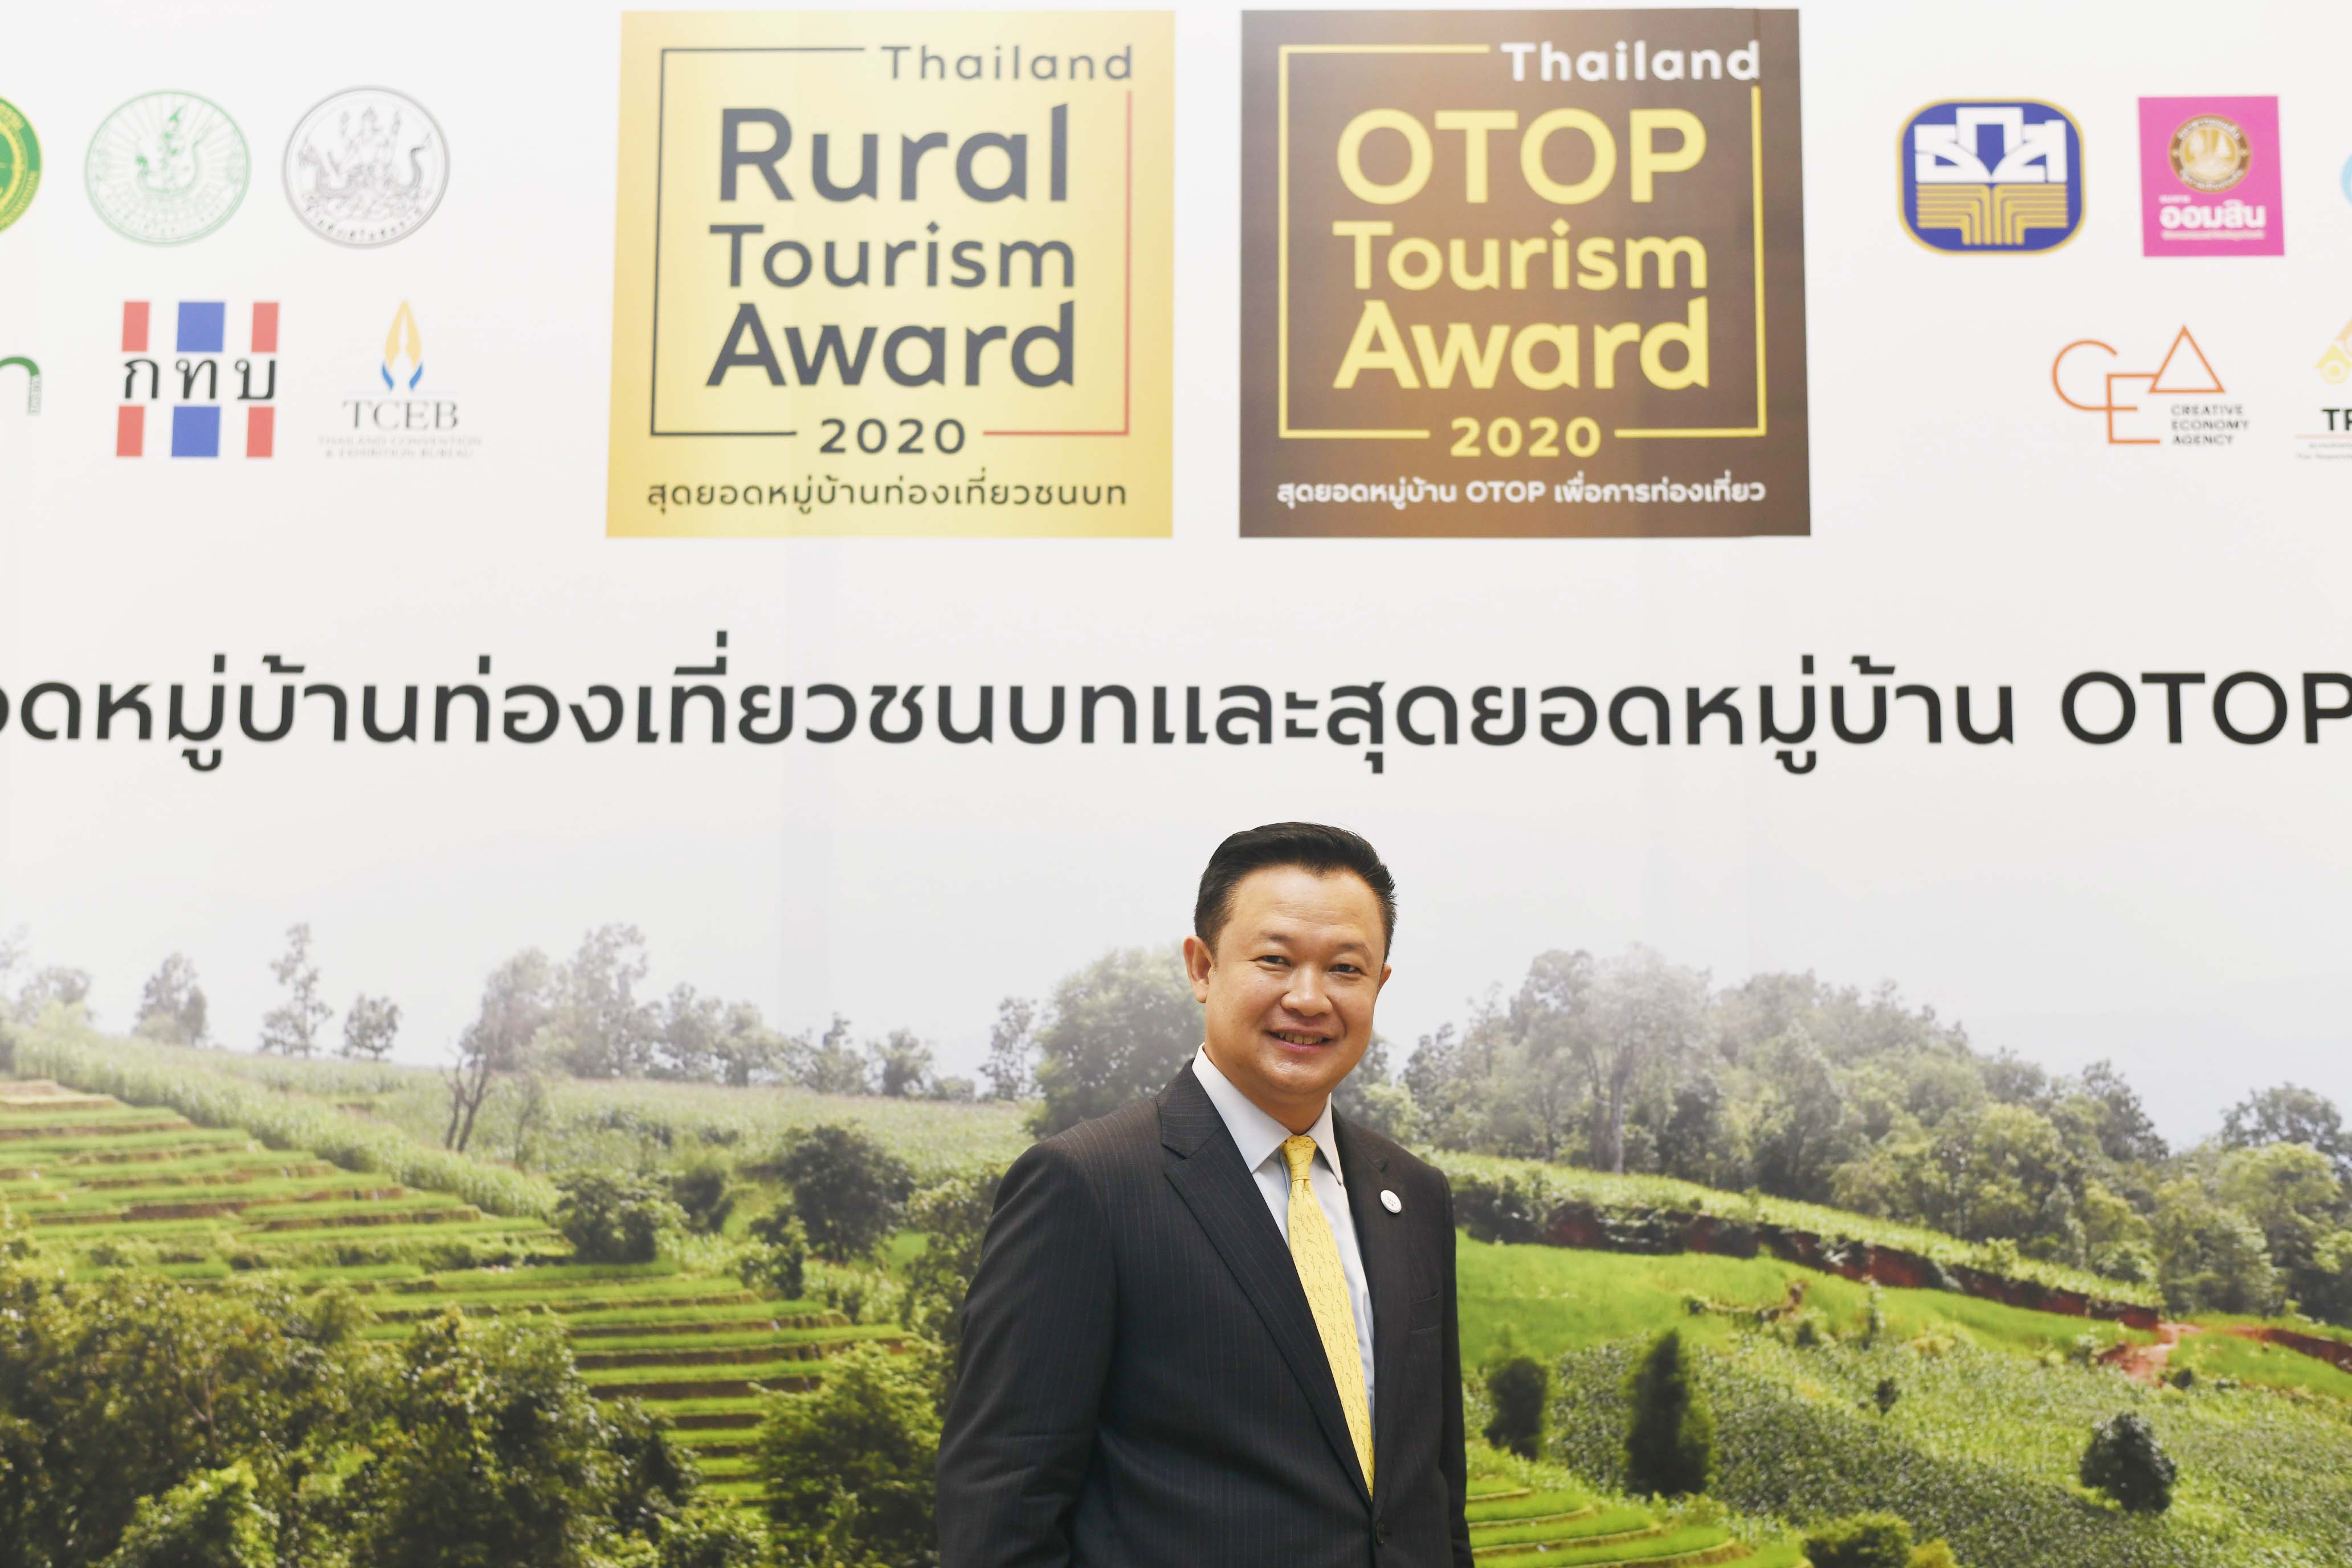 ททท. ผนึกกำลัง 40 องค์กรจัดประกวดสุดยอดหมู่บ้านท่องเที่ยวชนบท และสุดยอดหมู่บ้าน OTOP เพื่อการท่องเที่ยว ยกระดับแบรนด์การท่องเที่ยวโดยชุมชนของประเทศไทย